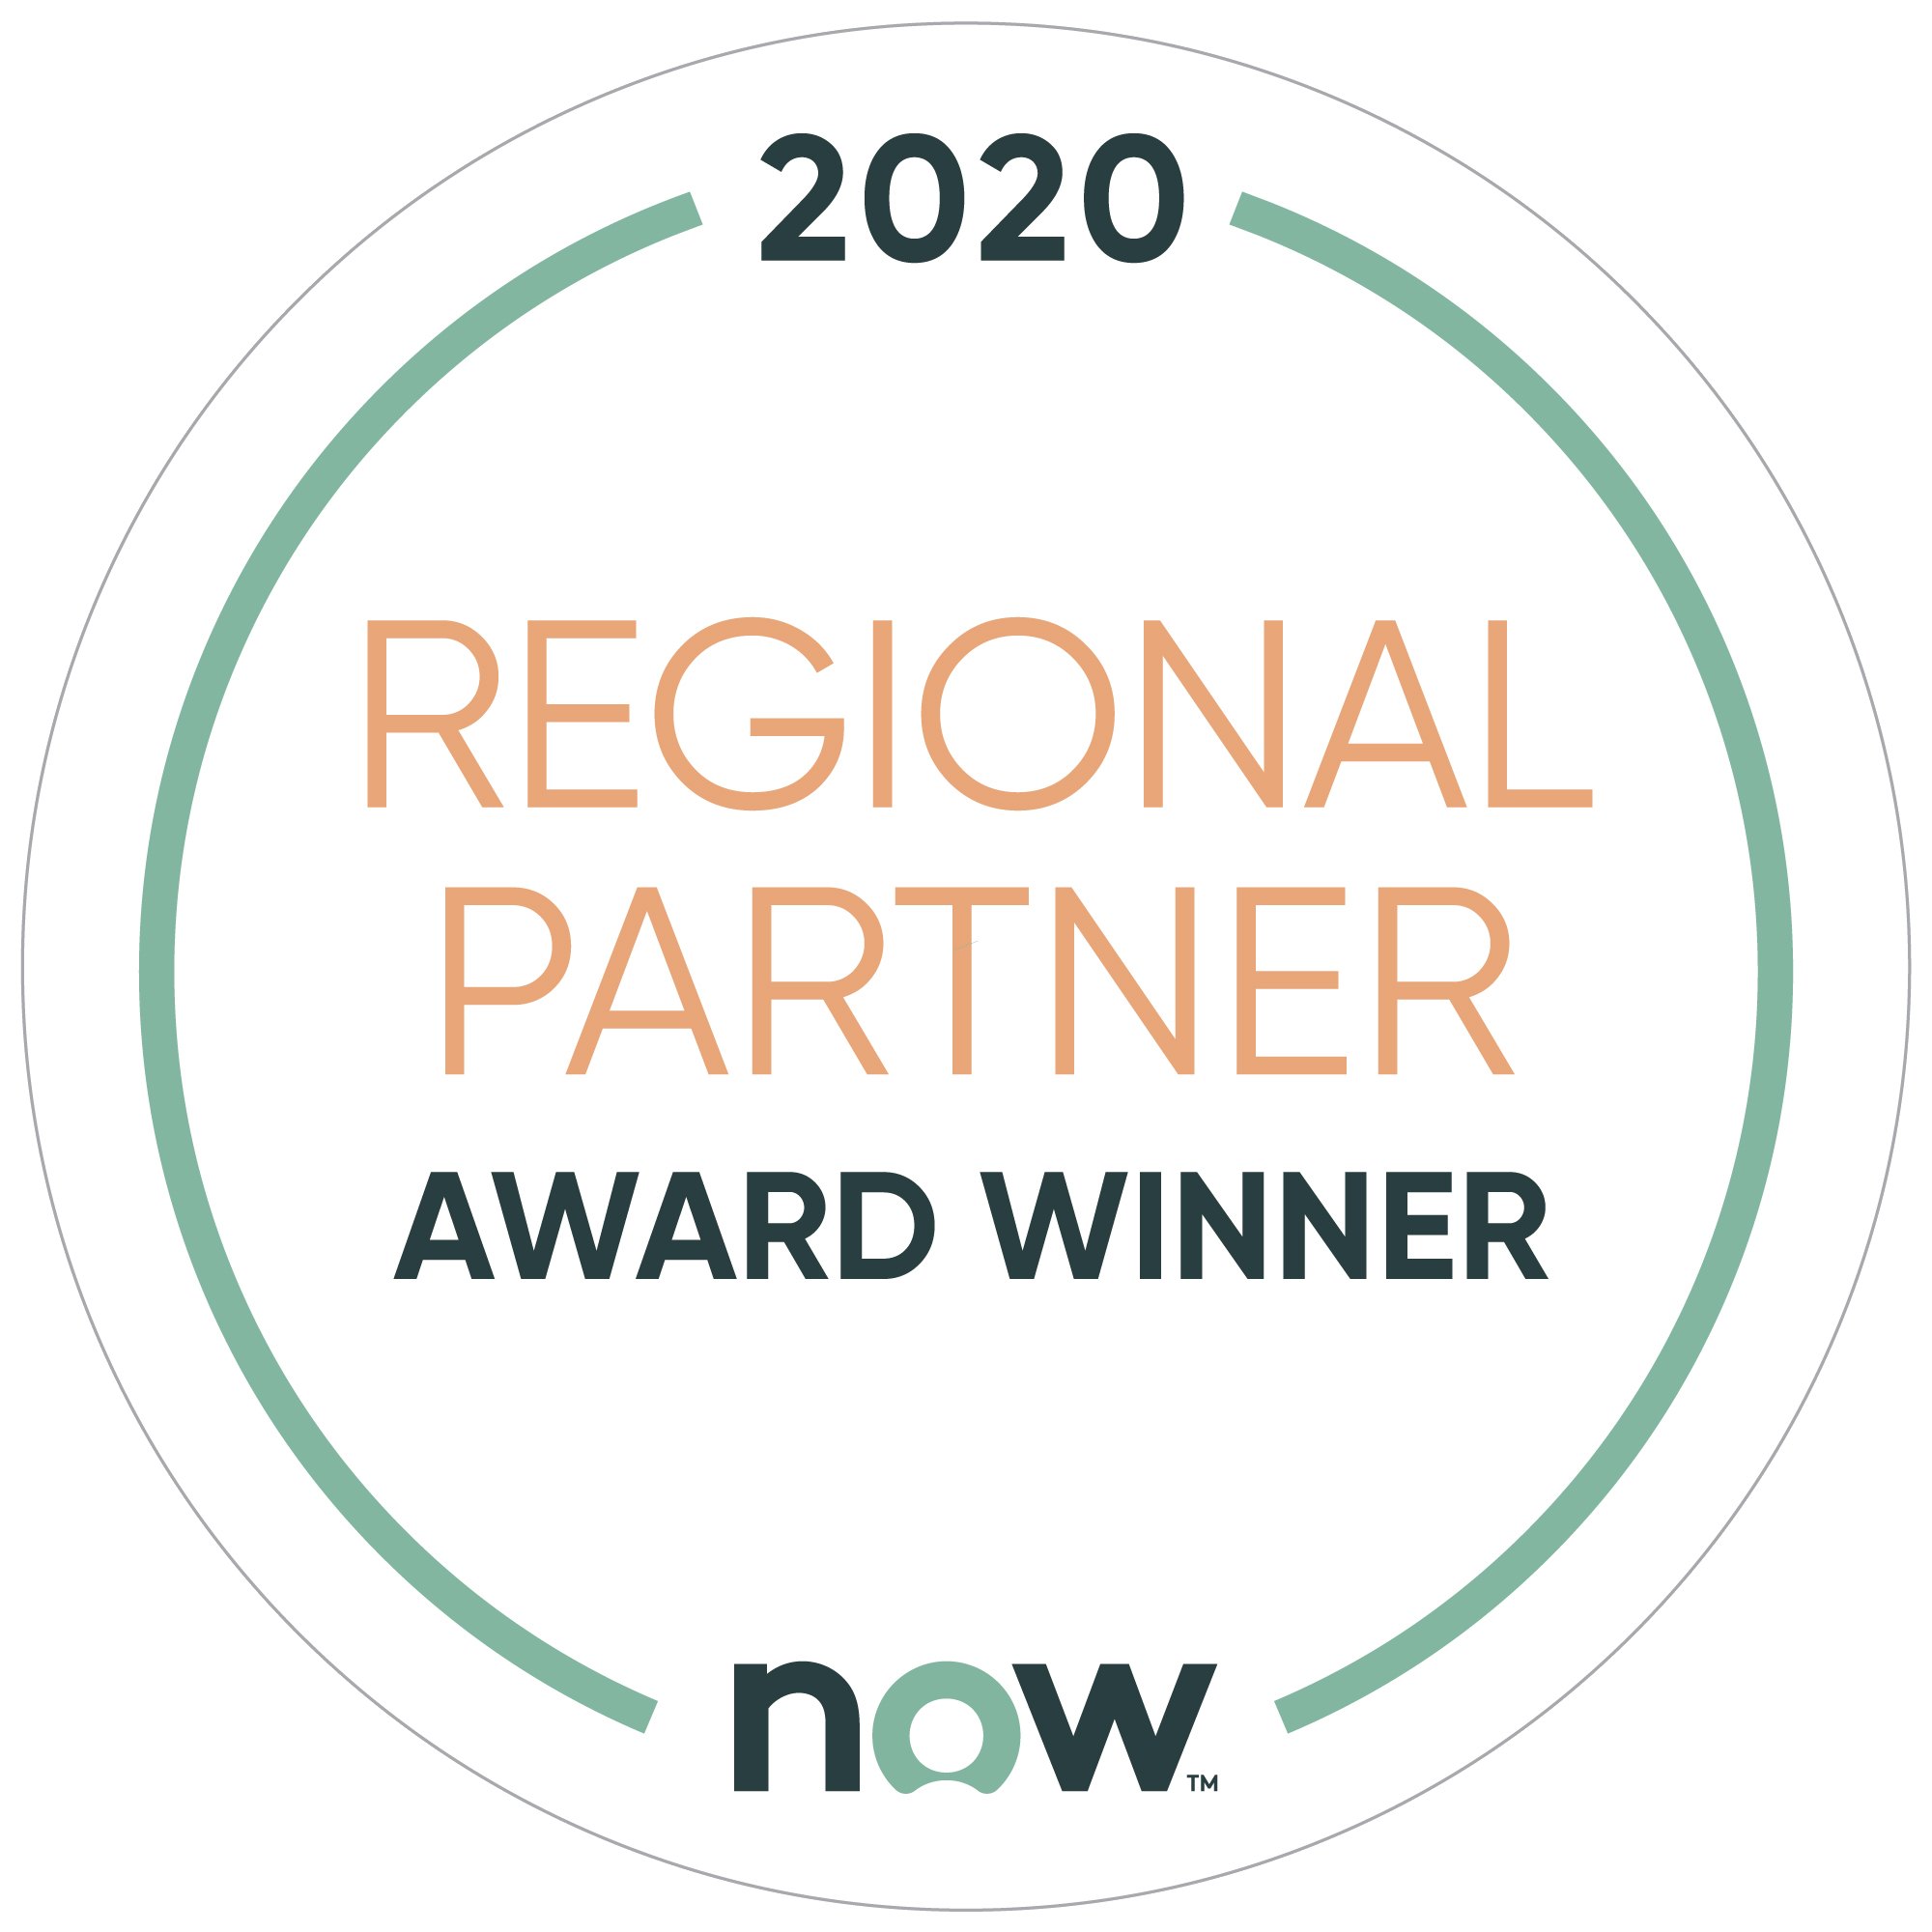 Devoteam is a Regional ServiceNow Partner Award Winner in 2020